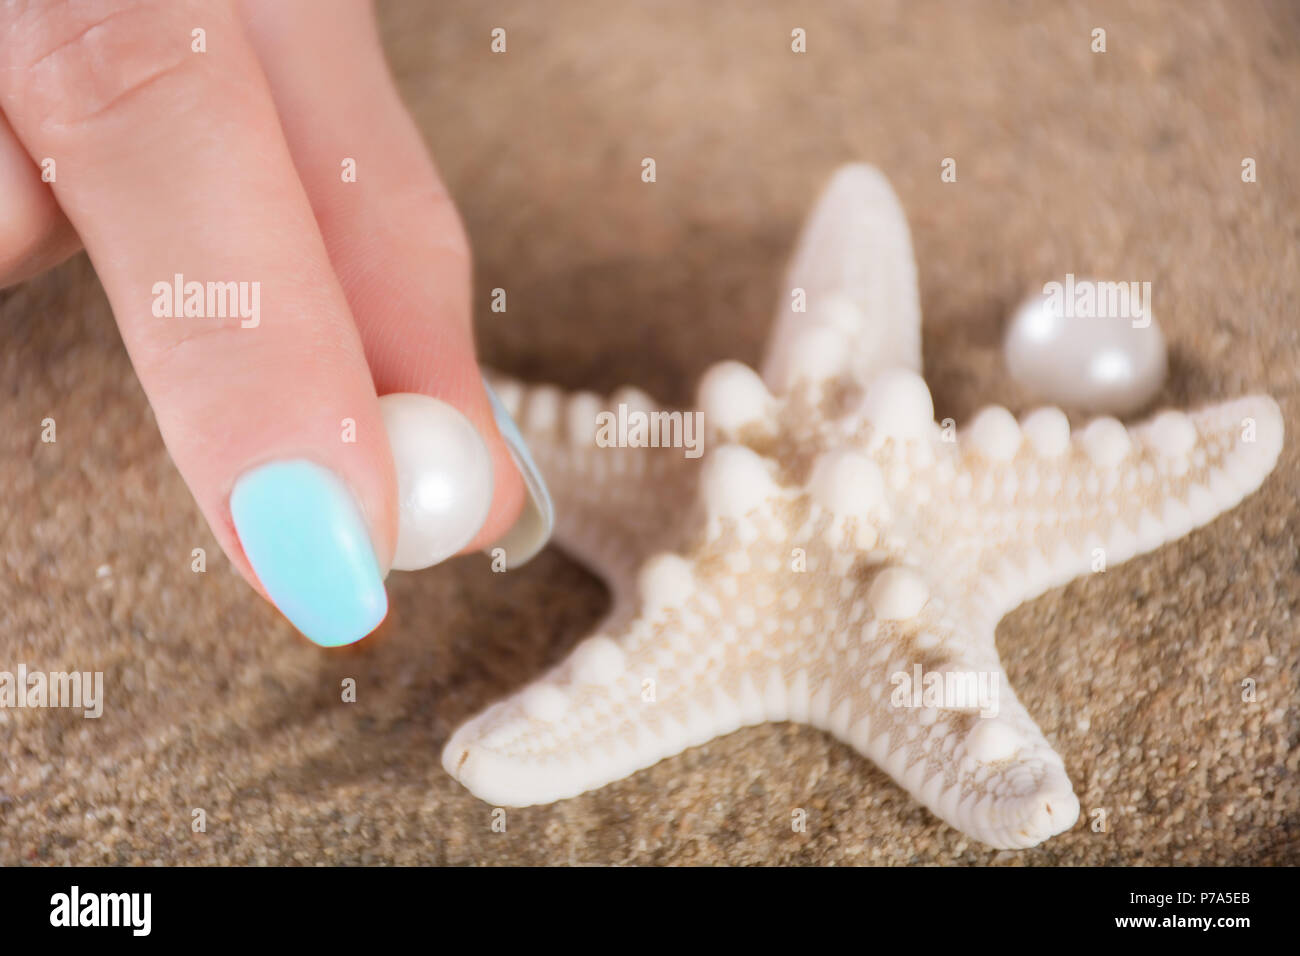 Jeune fille doucement les doigts avec des ongles manucure bleu pearl  holding polonaise et des étoiles de mer sur plage sable floue en  arrière-plan. Concept de vacances d'été Photo Stock - Alamy